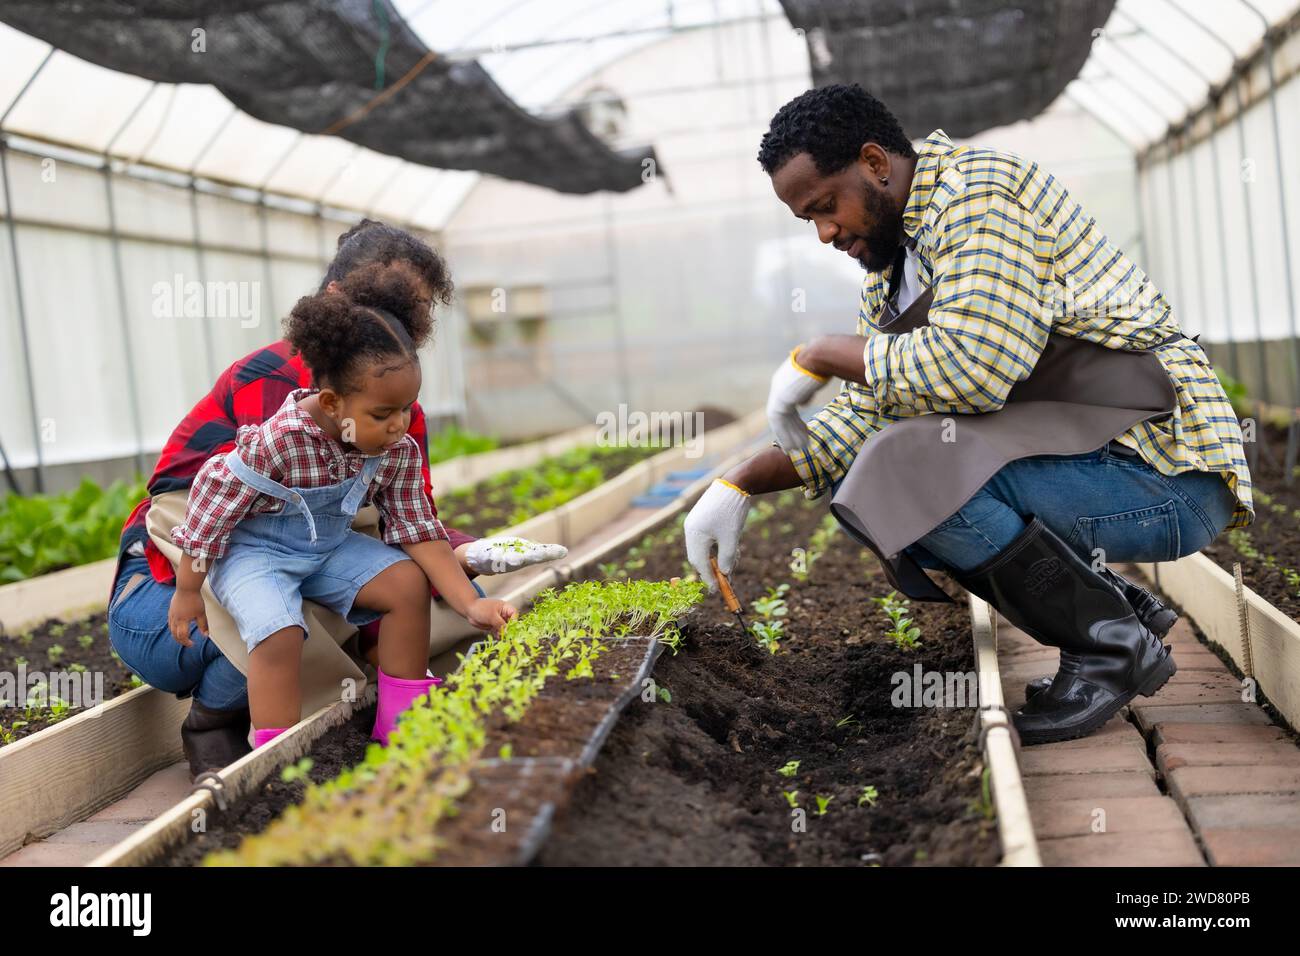 Afrikanische schwarze Kinderspielpflanze kleine Baumgartenarbeit auf Bauernhof mit Familie. Kinder, Papa, Mama, liebt Natur, oganische Landwirtschaft. Stockfoto